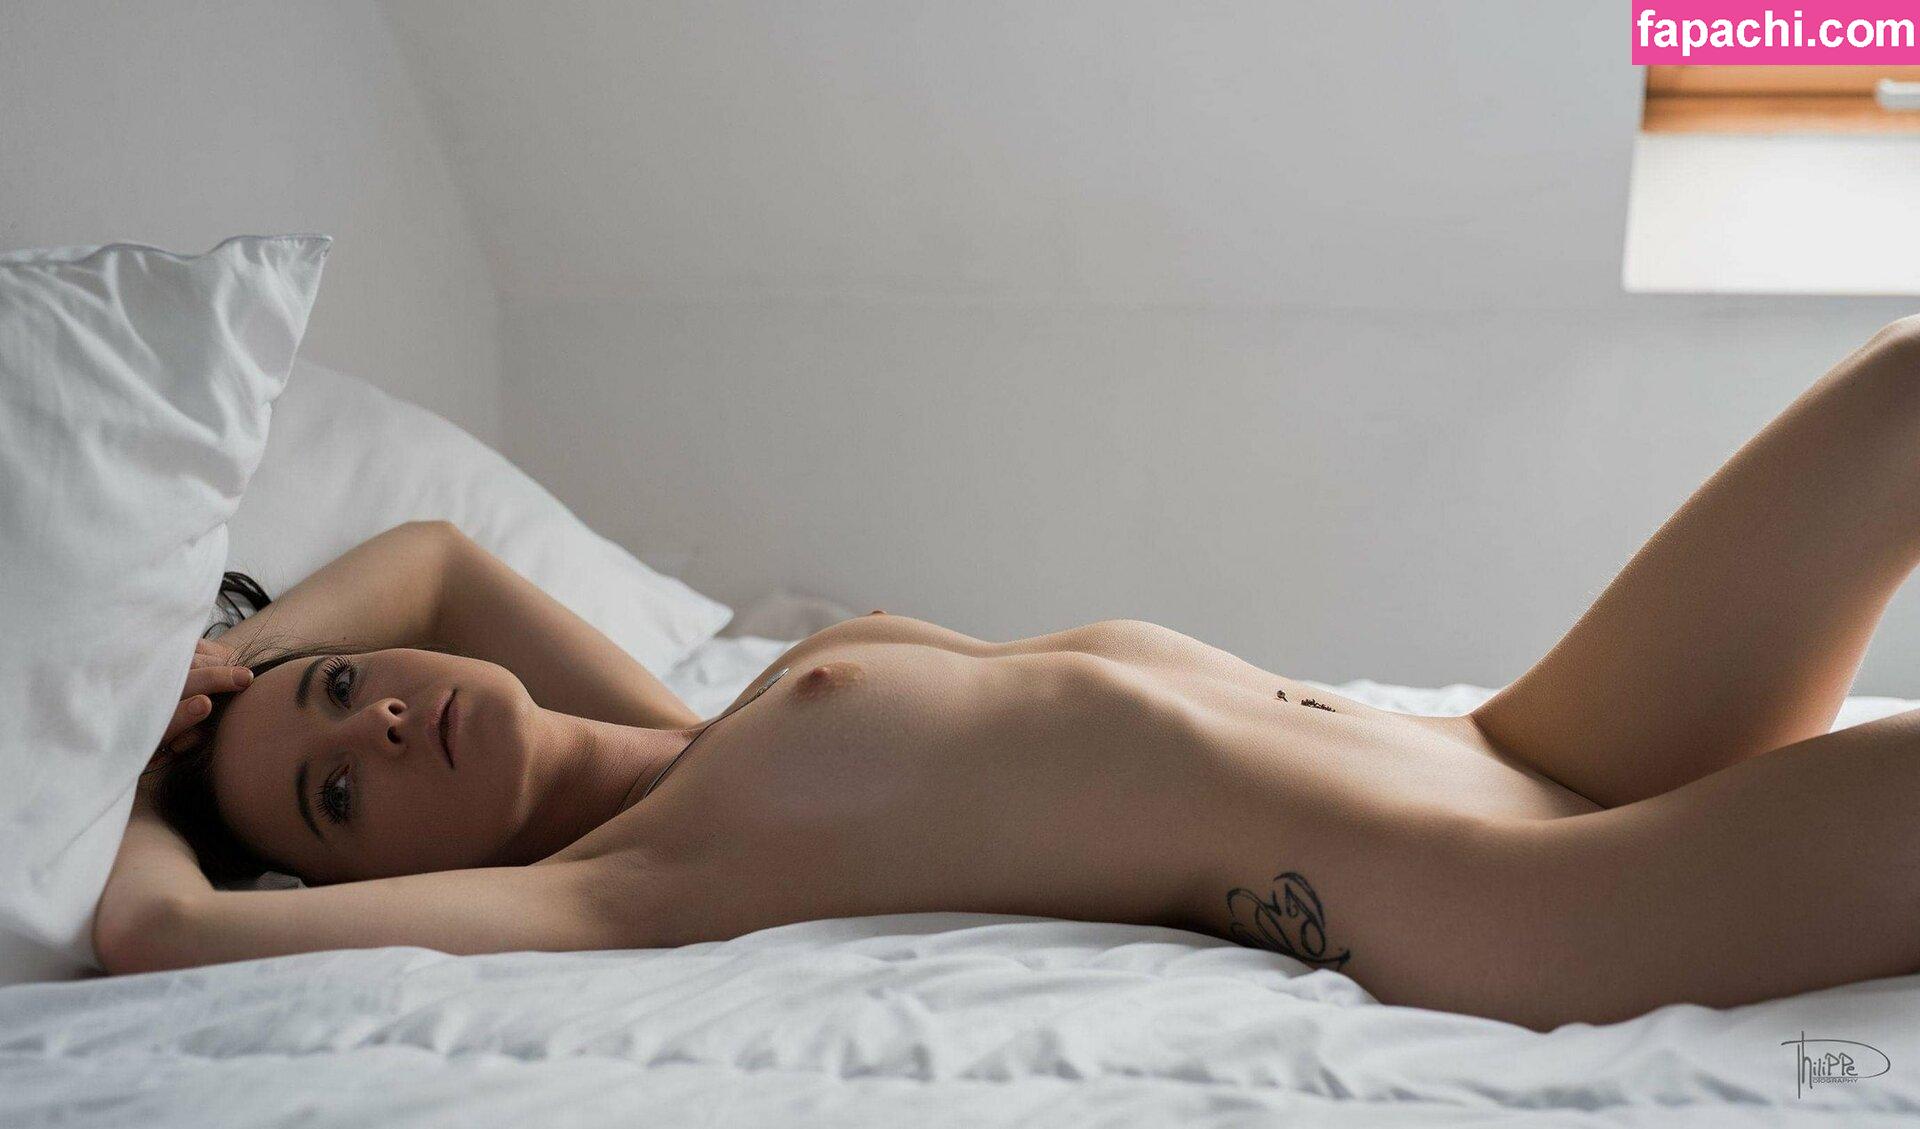 Jill Dewyn / brunettebabe / brunnettebabe / jill_dewyn leaked nude photo #0028 from OnlyFans/Patreon